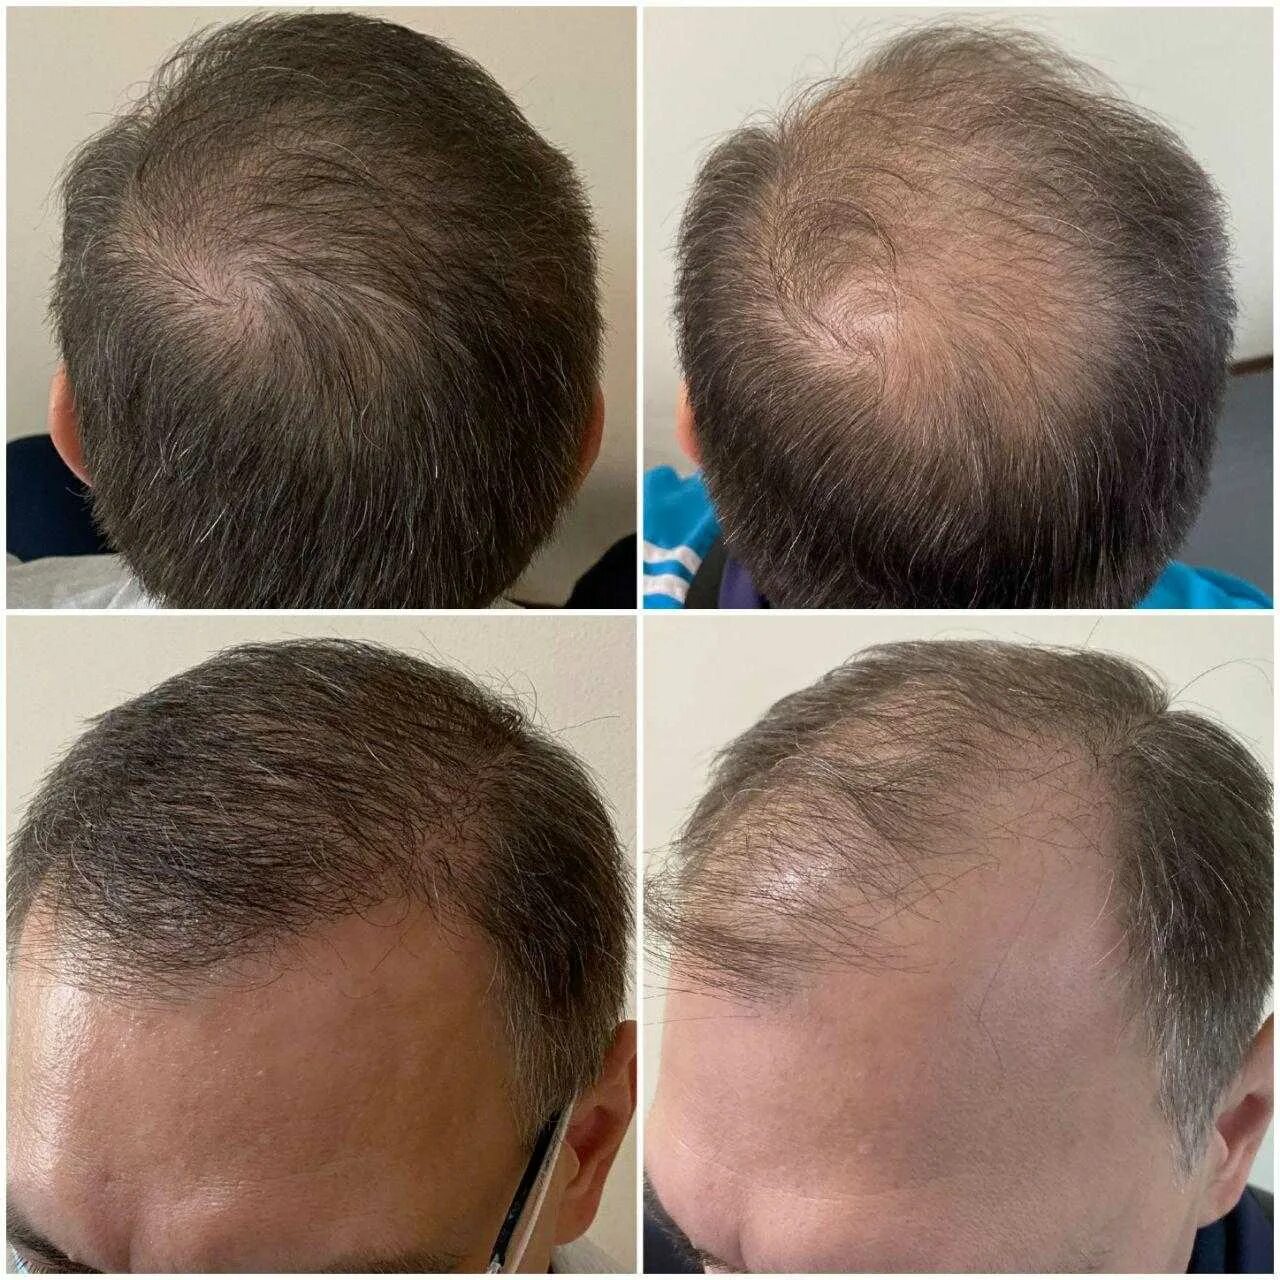 Графт трансплантация волос. Пересадка волос до и после. Трансплантация волос методом fue. Выпадают волосы после пересадки